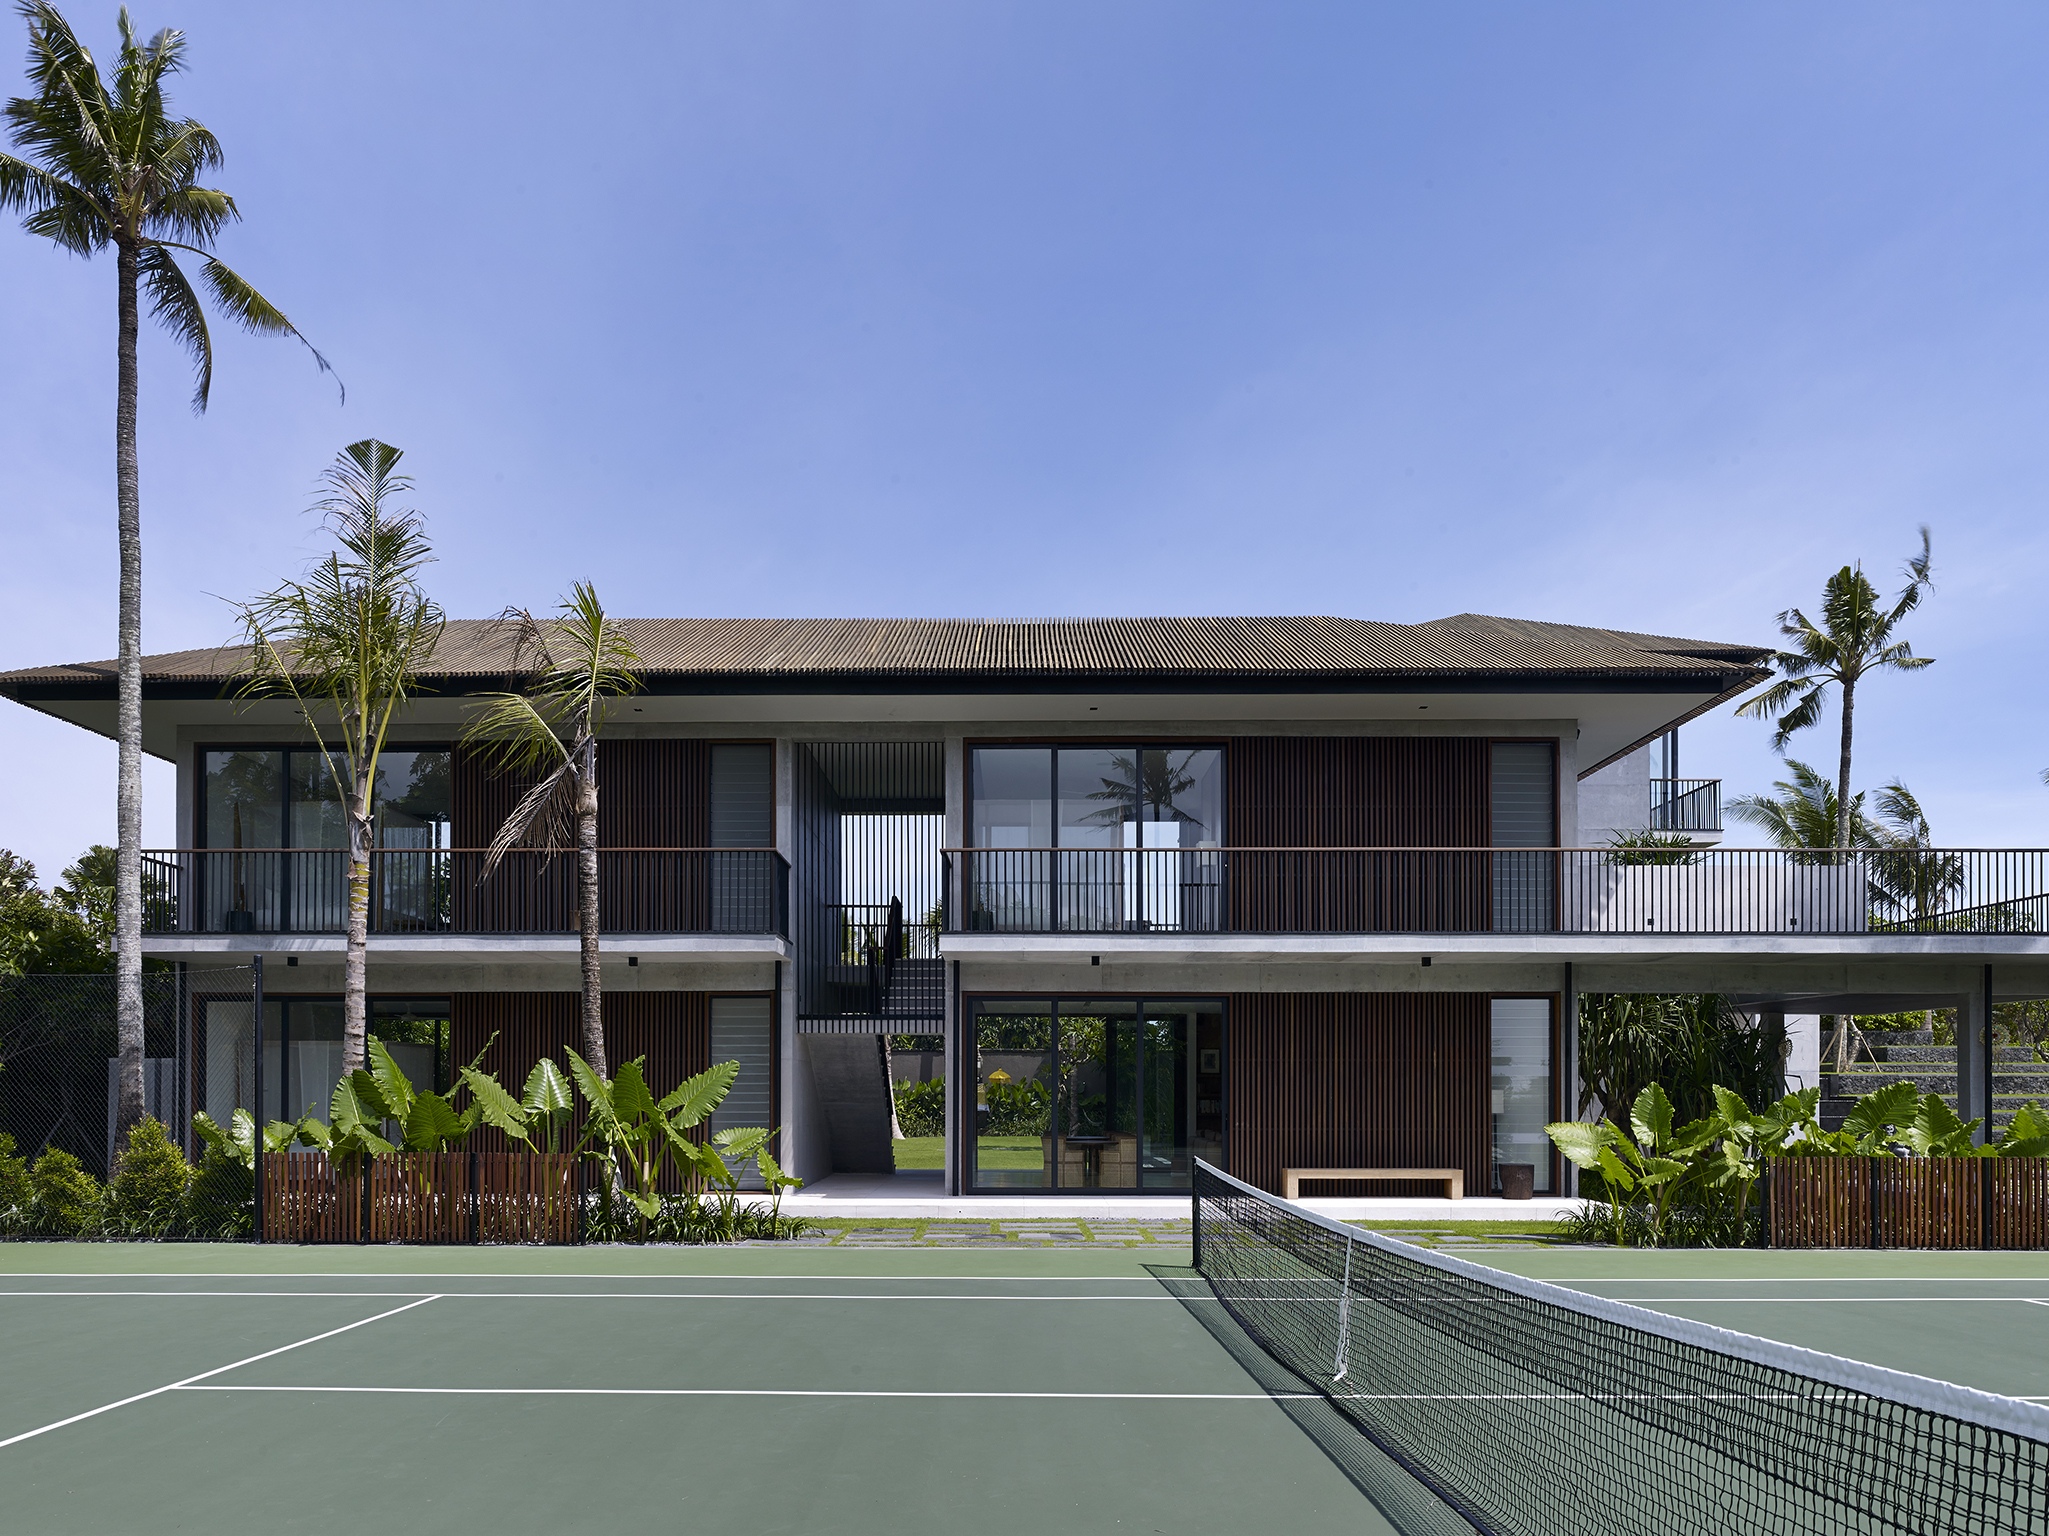 Arnalaya Beach House - Tennis suites by tennis court - Arnalaya Beach House, Canggu, Bali